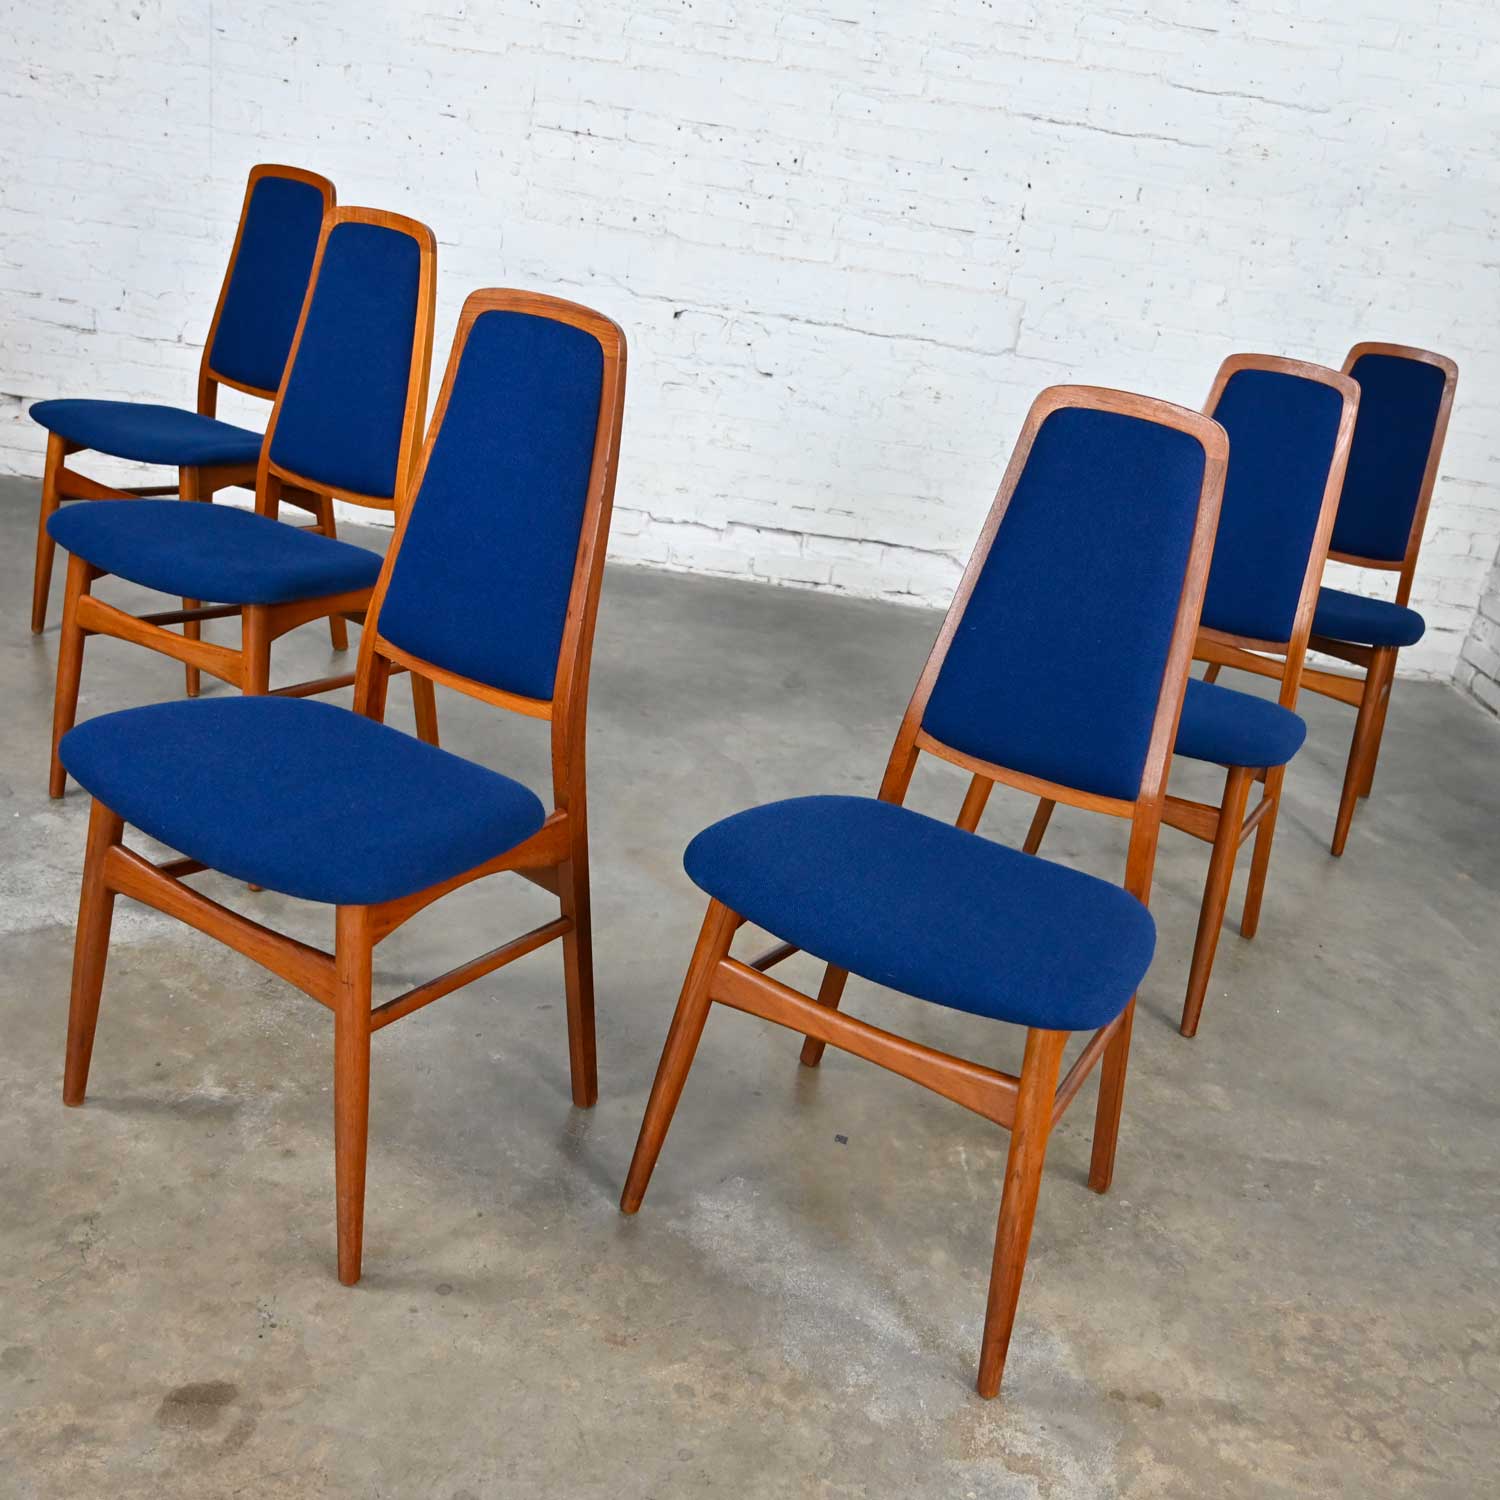 6 Vintage Vamdrup Stolefabrik Scandinavian Modern Teak & Blue Dining Chairs Style Eva Chair by Niels Koefoed